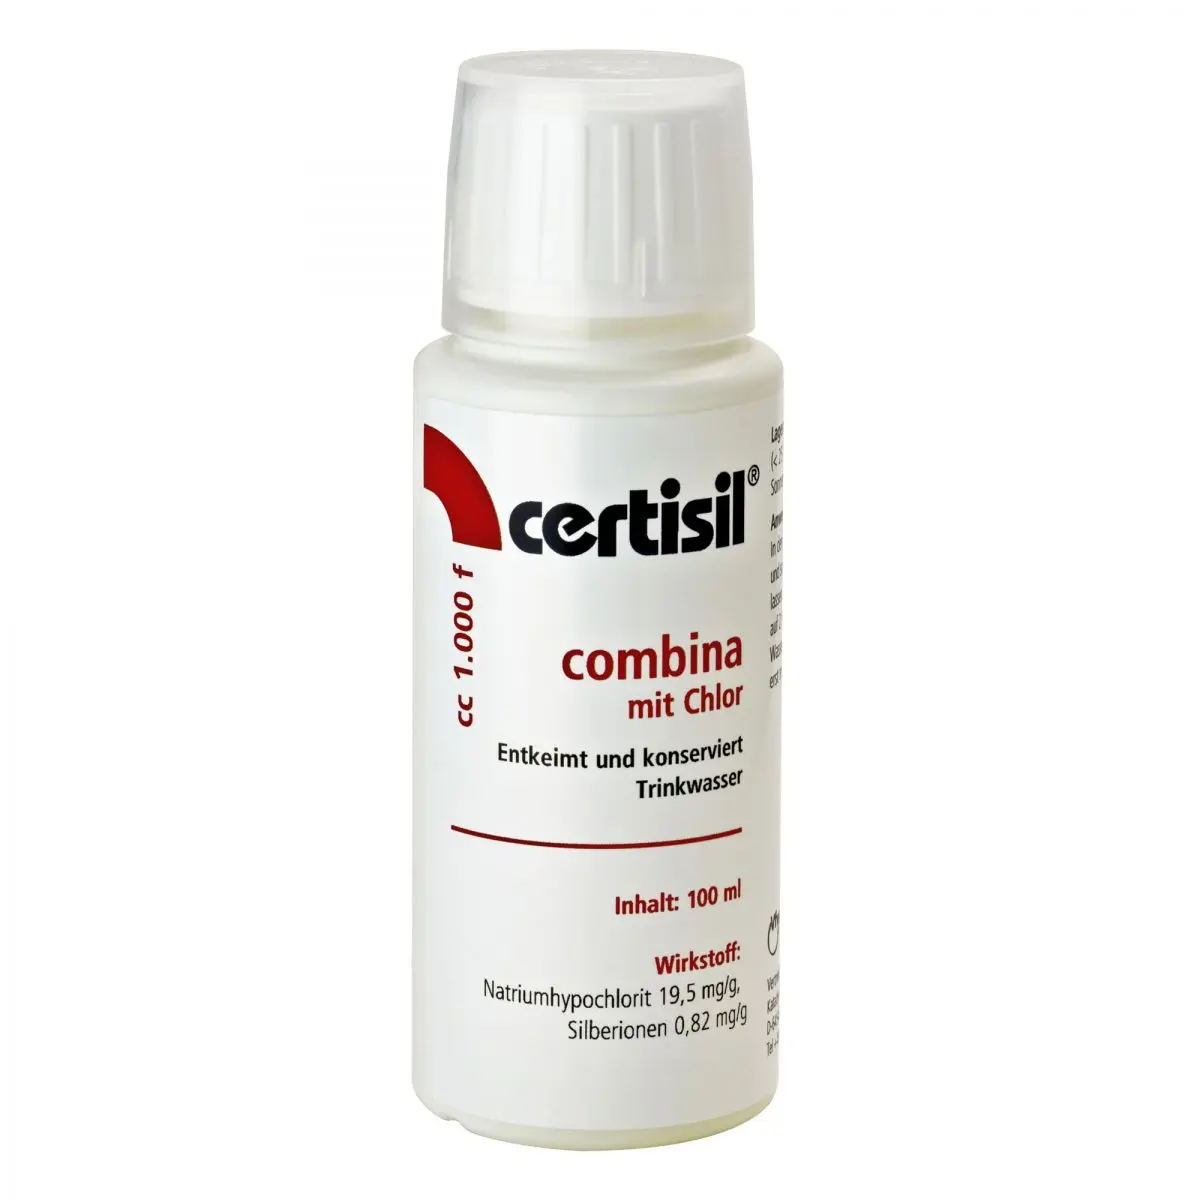 Certisil combina - CC 1000 f, 100 ml folyadék, önkiszolgáló kijelzőcsomag